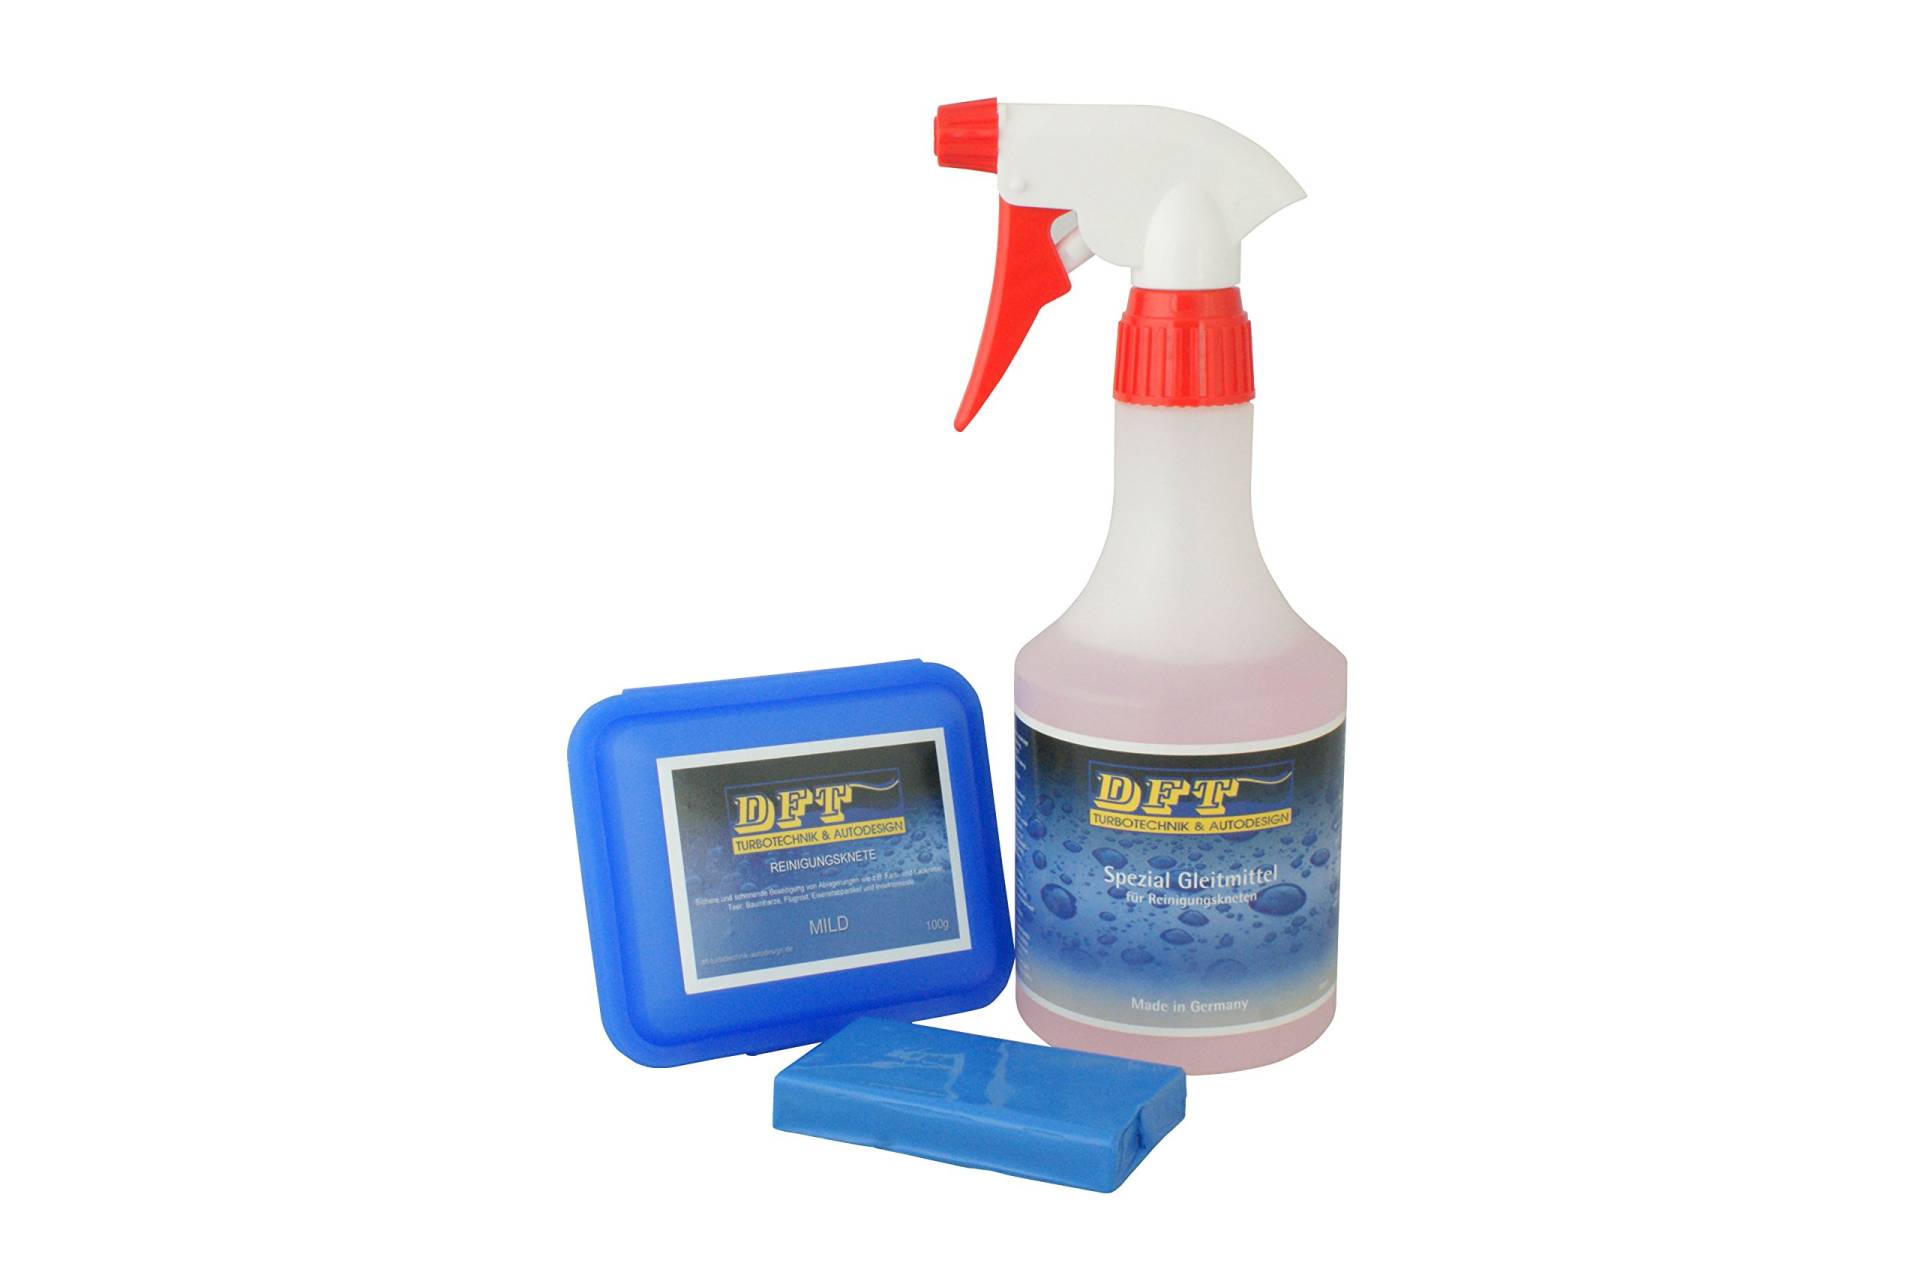 DFT-Reinigungsknete mild blau 100 g inkl Spezial Gleitmittel 500 ml von DFT